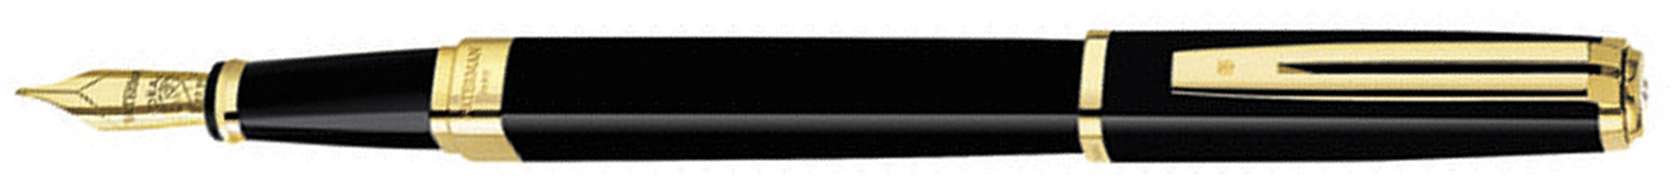 Перьевая ручка Waterman Exception Slim Black GT. Перо - золото 18К, детали дизайна: позолота 23К